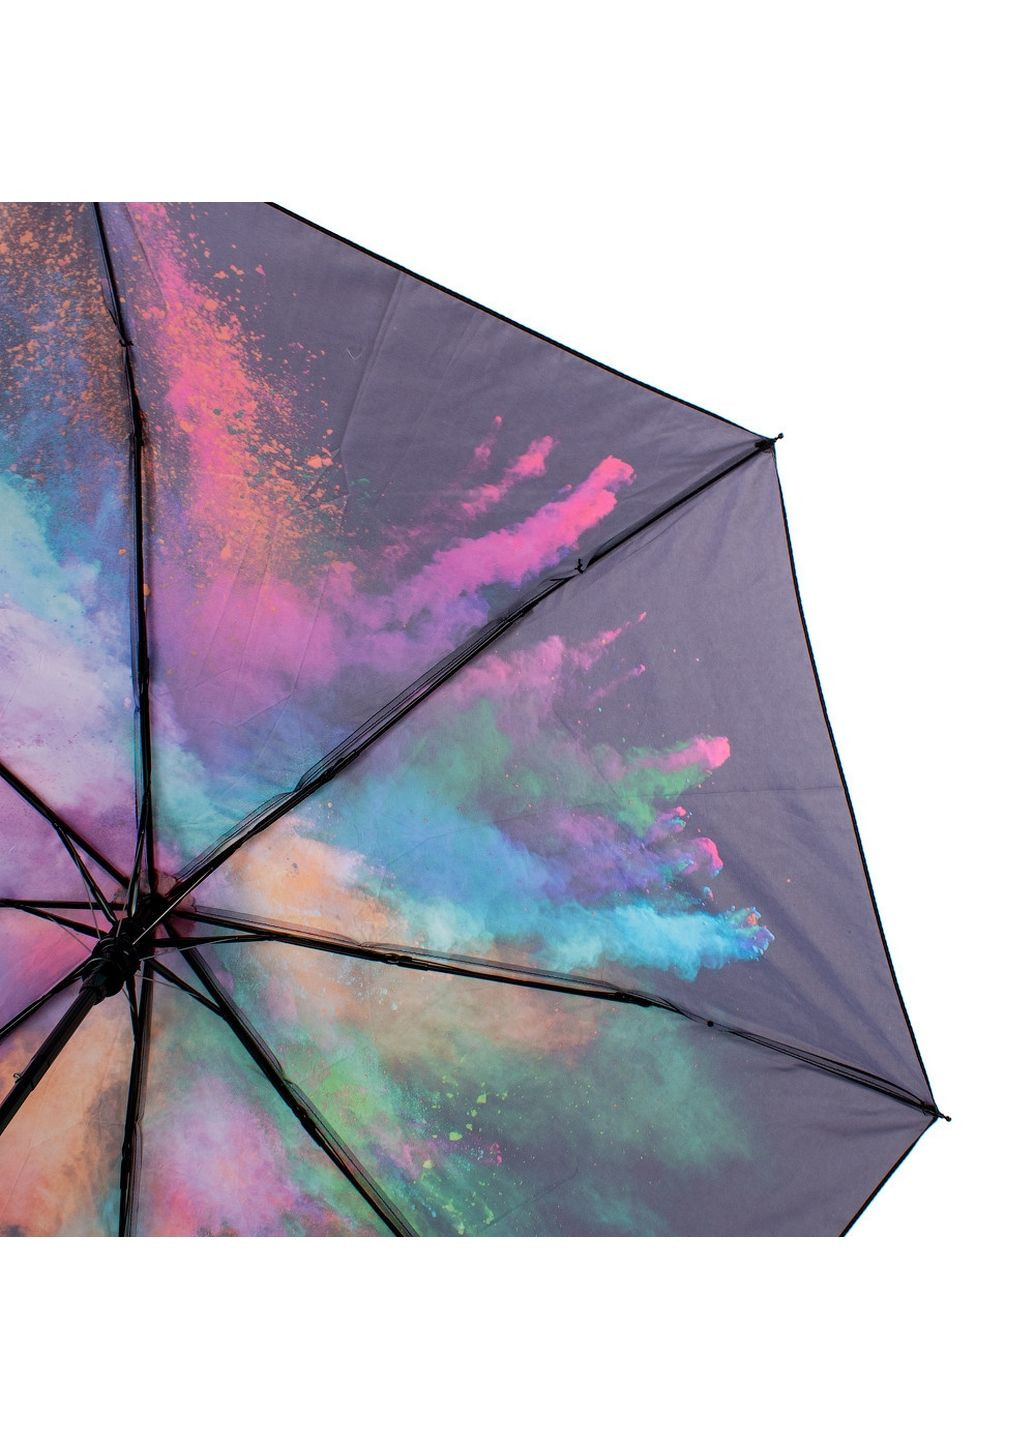 Женский складной зонт полуавтомат 95см Happy Rain (288047722)